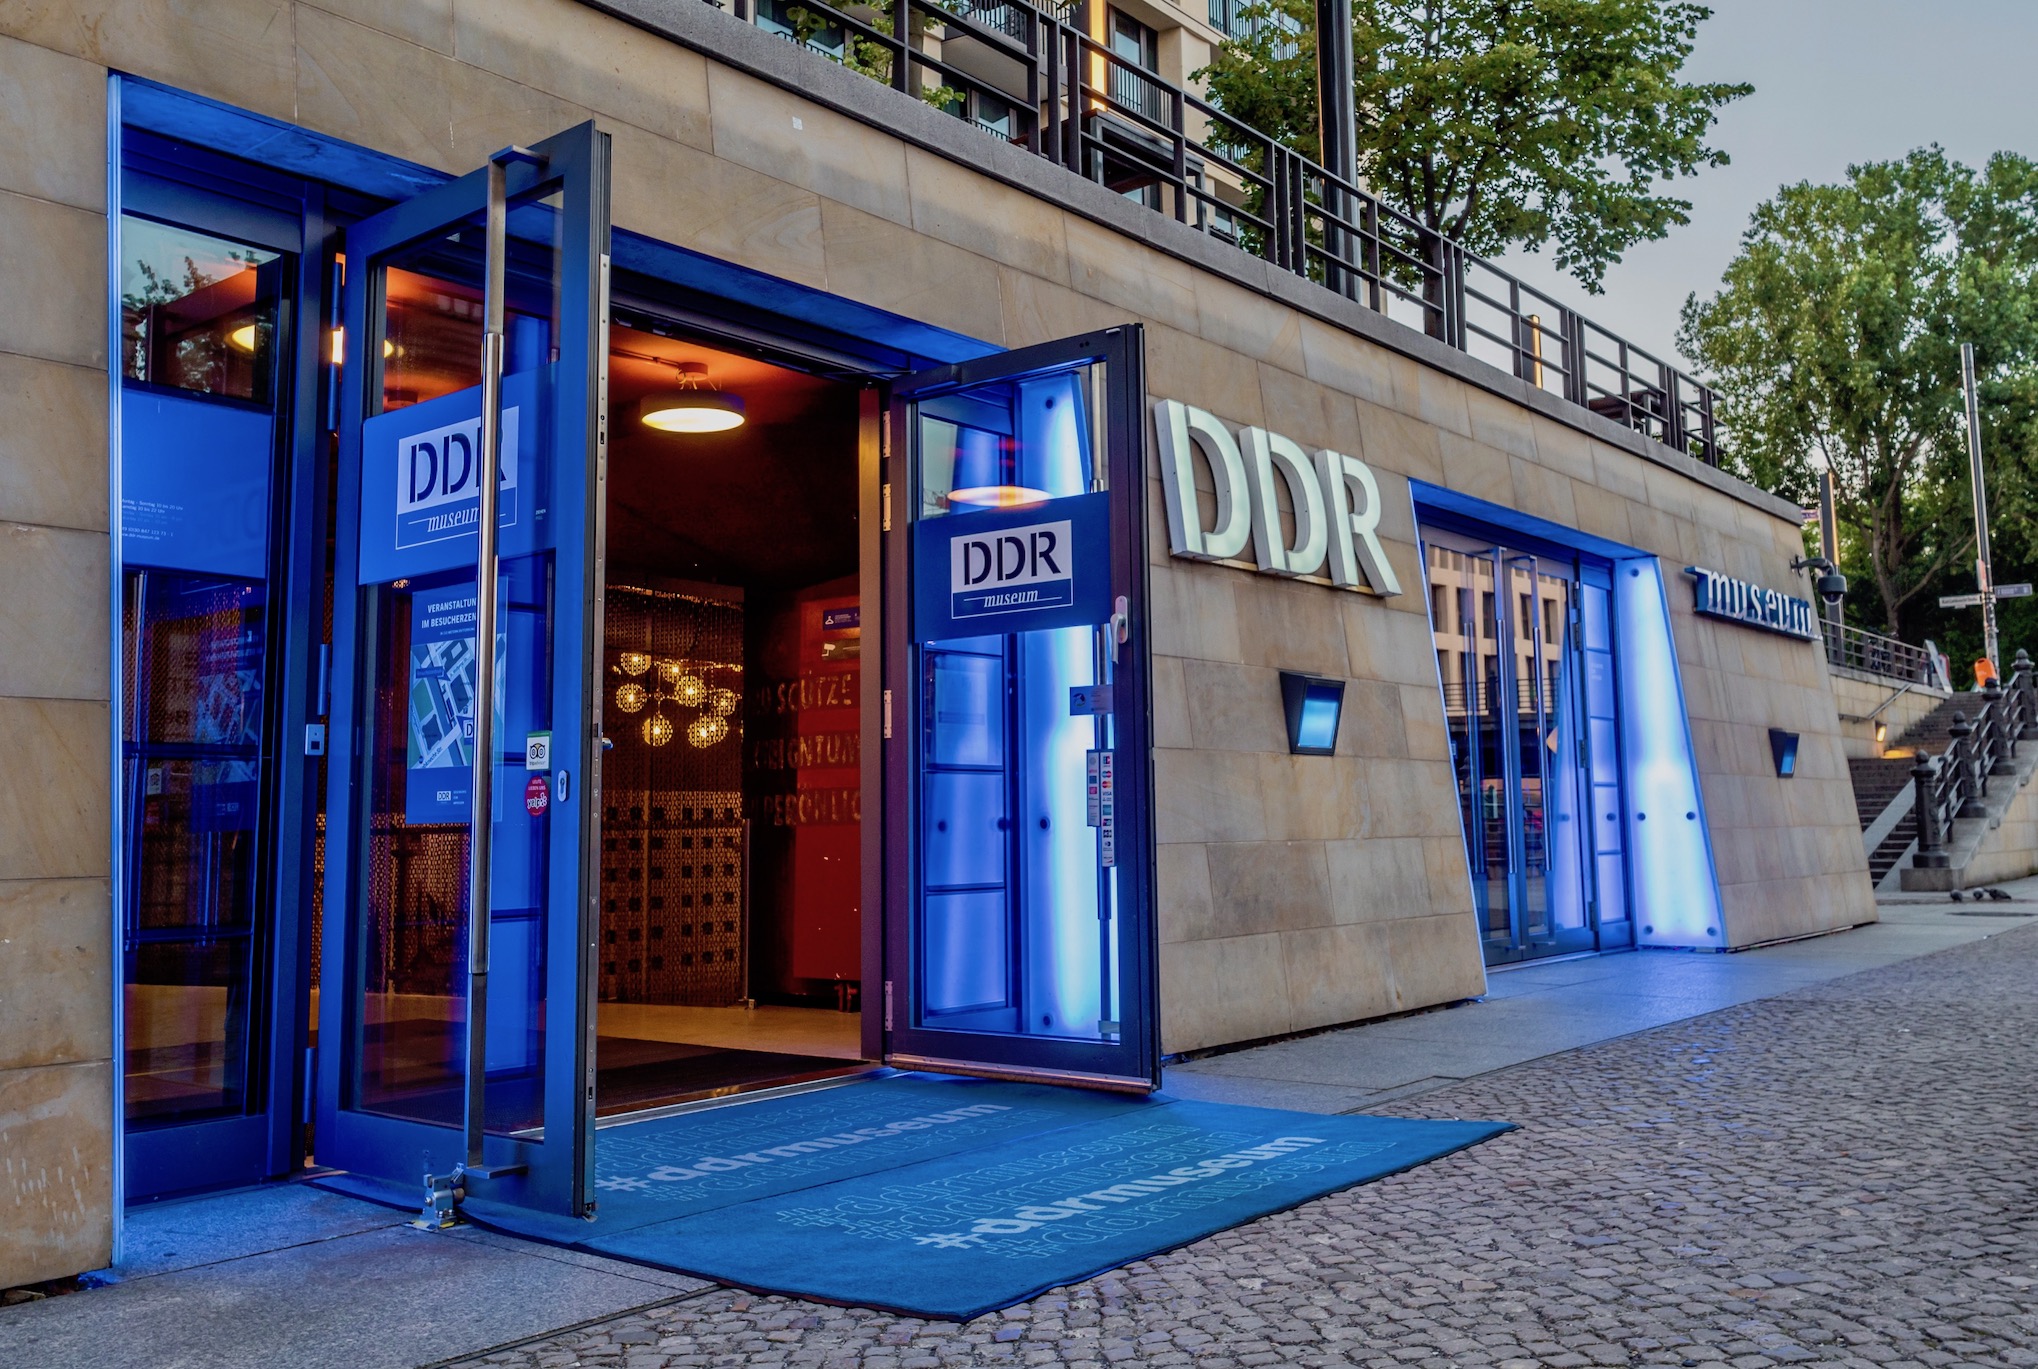 DDR museum - Berlin's Interactive Museum - Berlin - 